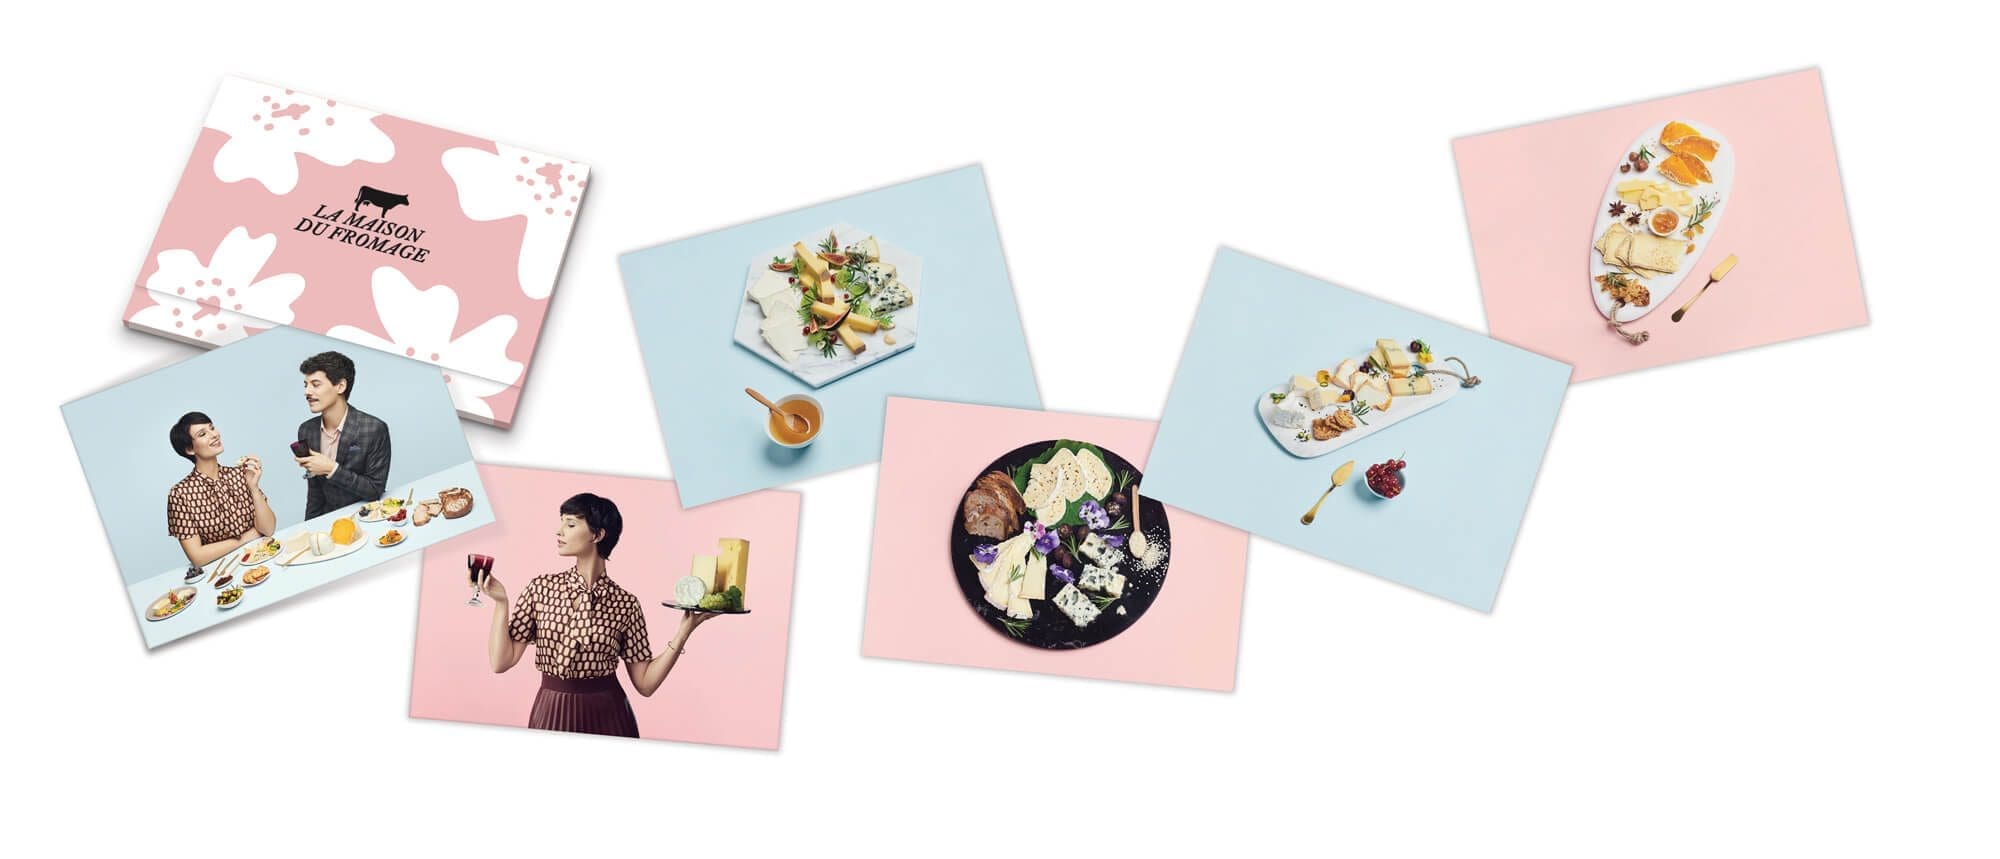 Les cartes postale de la maison du fromage avec des photos de plateaux de fromages, rose et bleu, masculin féminin, art direction et design ichetkar